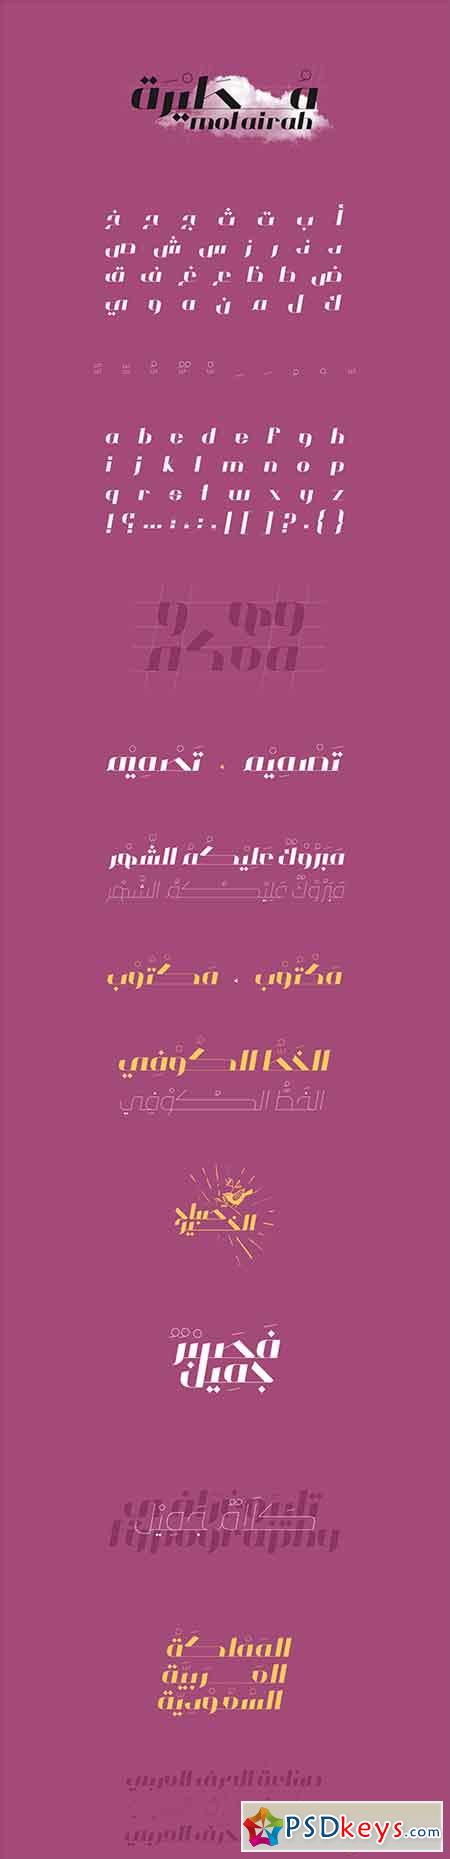 Motairah Typeface